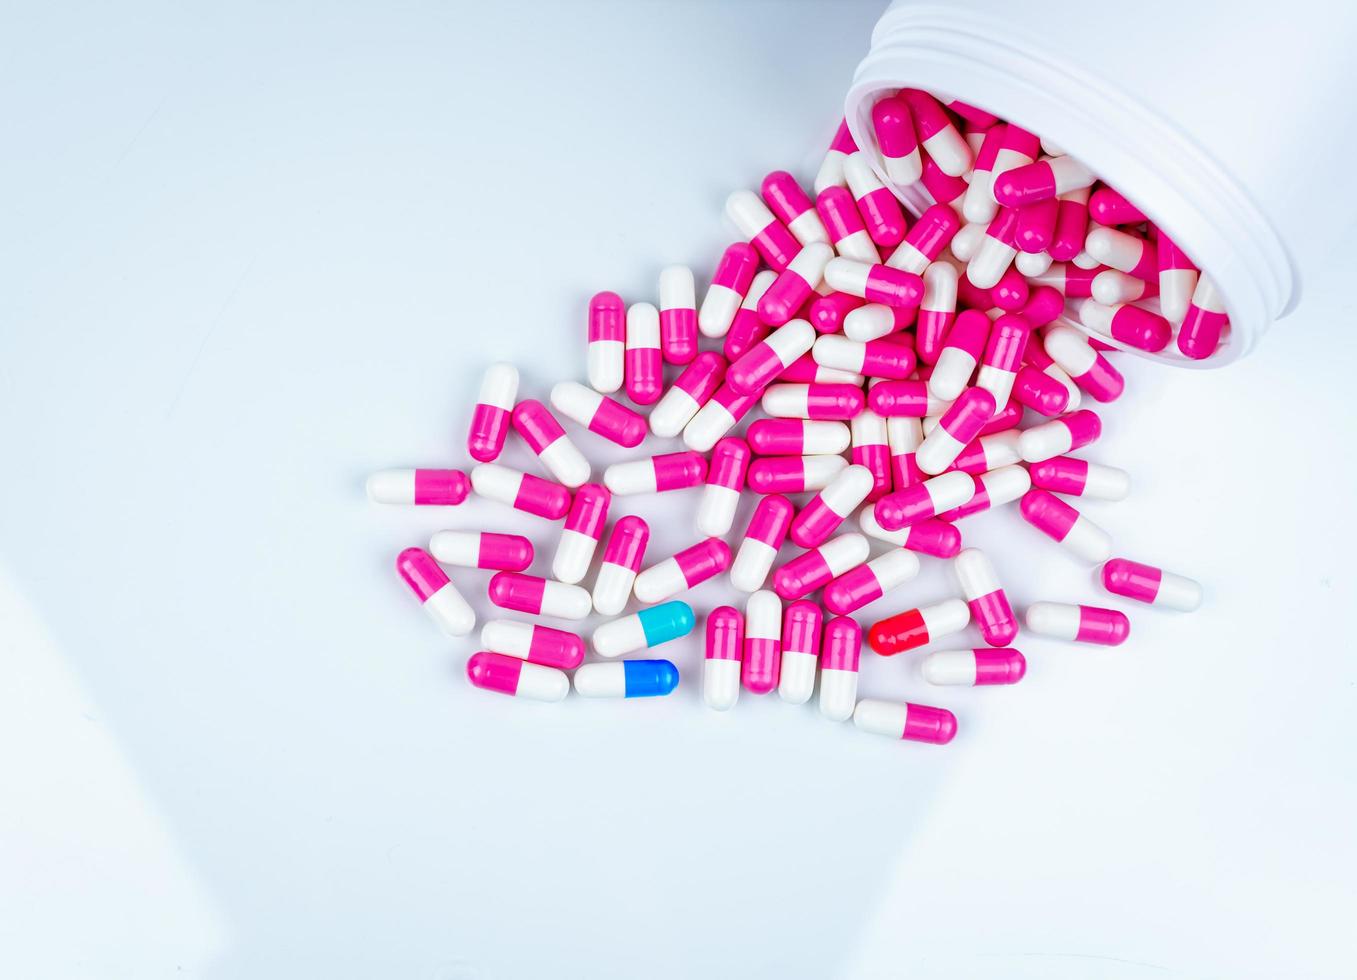 blå-vit kapsel kontaminerad i rosa-vita kapselpiller. kapselpiller utspridda ur plastflaska. läkemedelsindustri. apotek apotek bakgrund. användning av antibiotika på sjukhus. foto